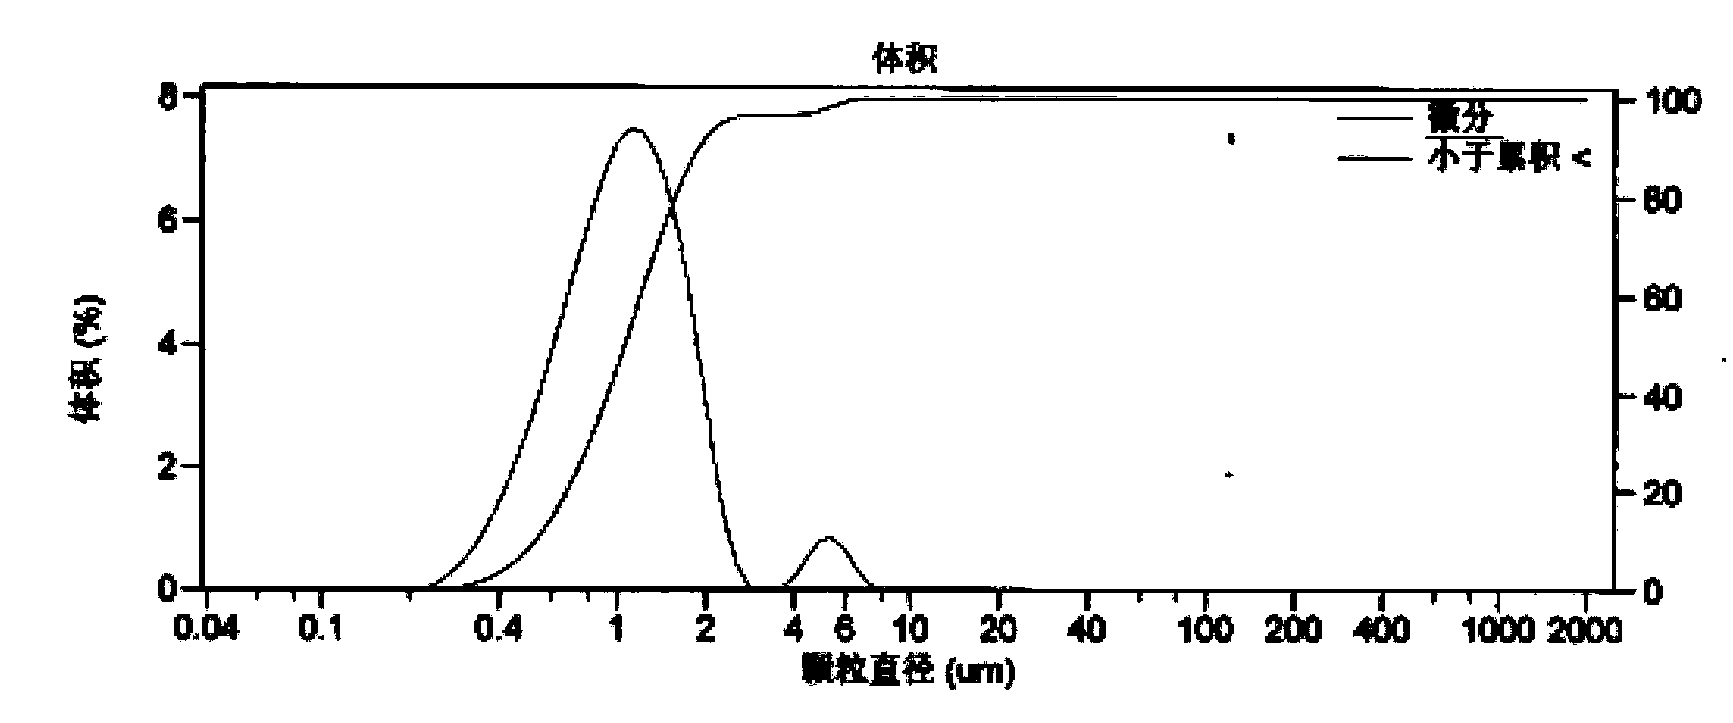 Preparation method of titanium dioxide